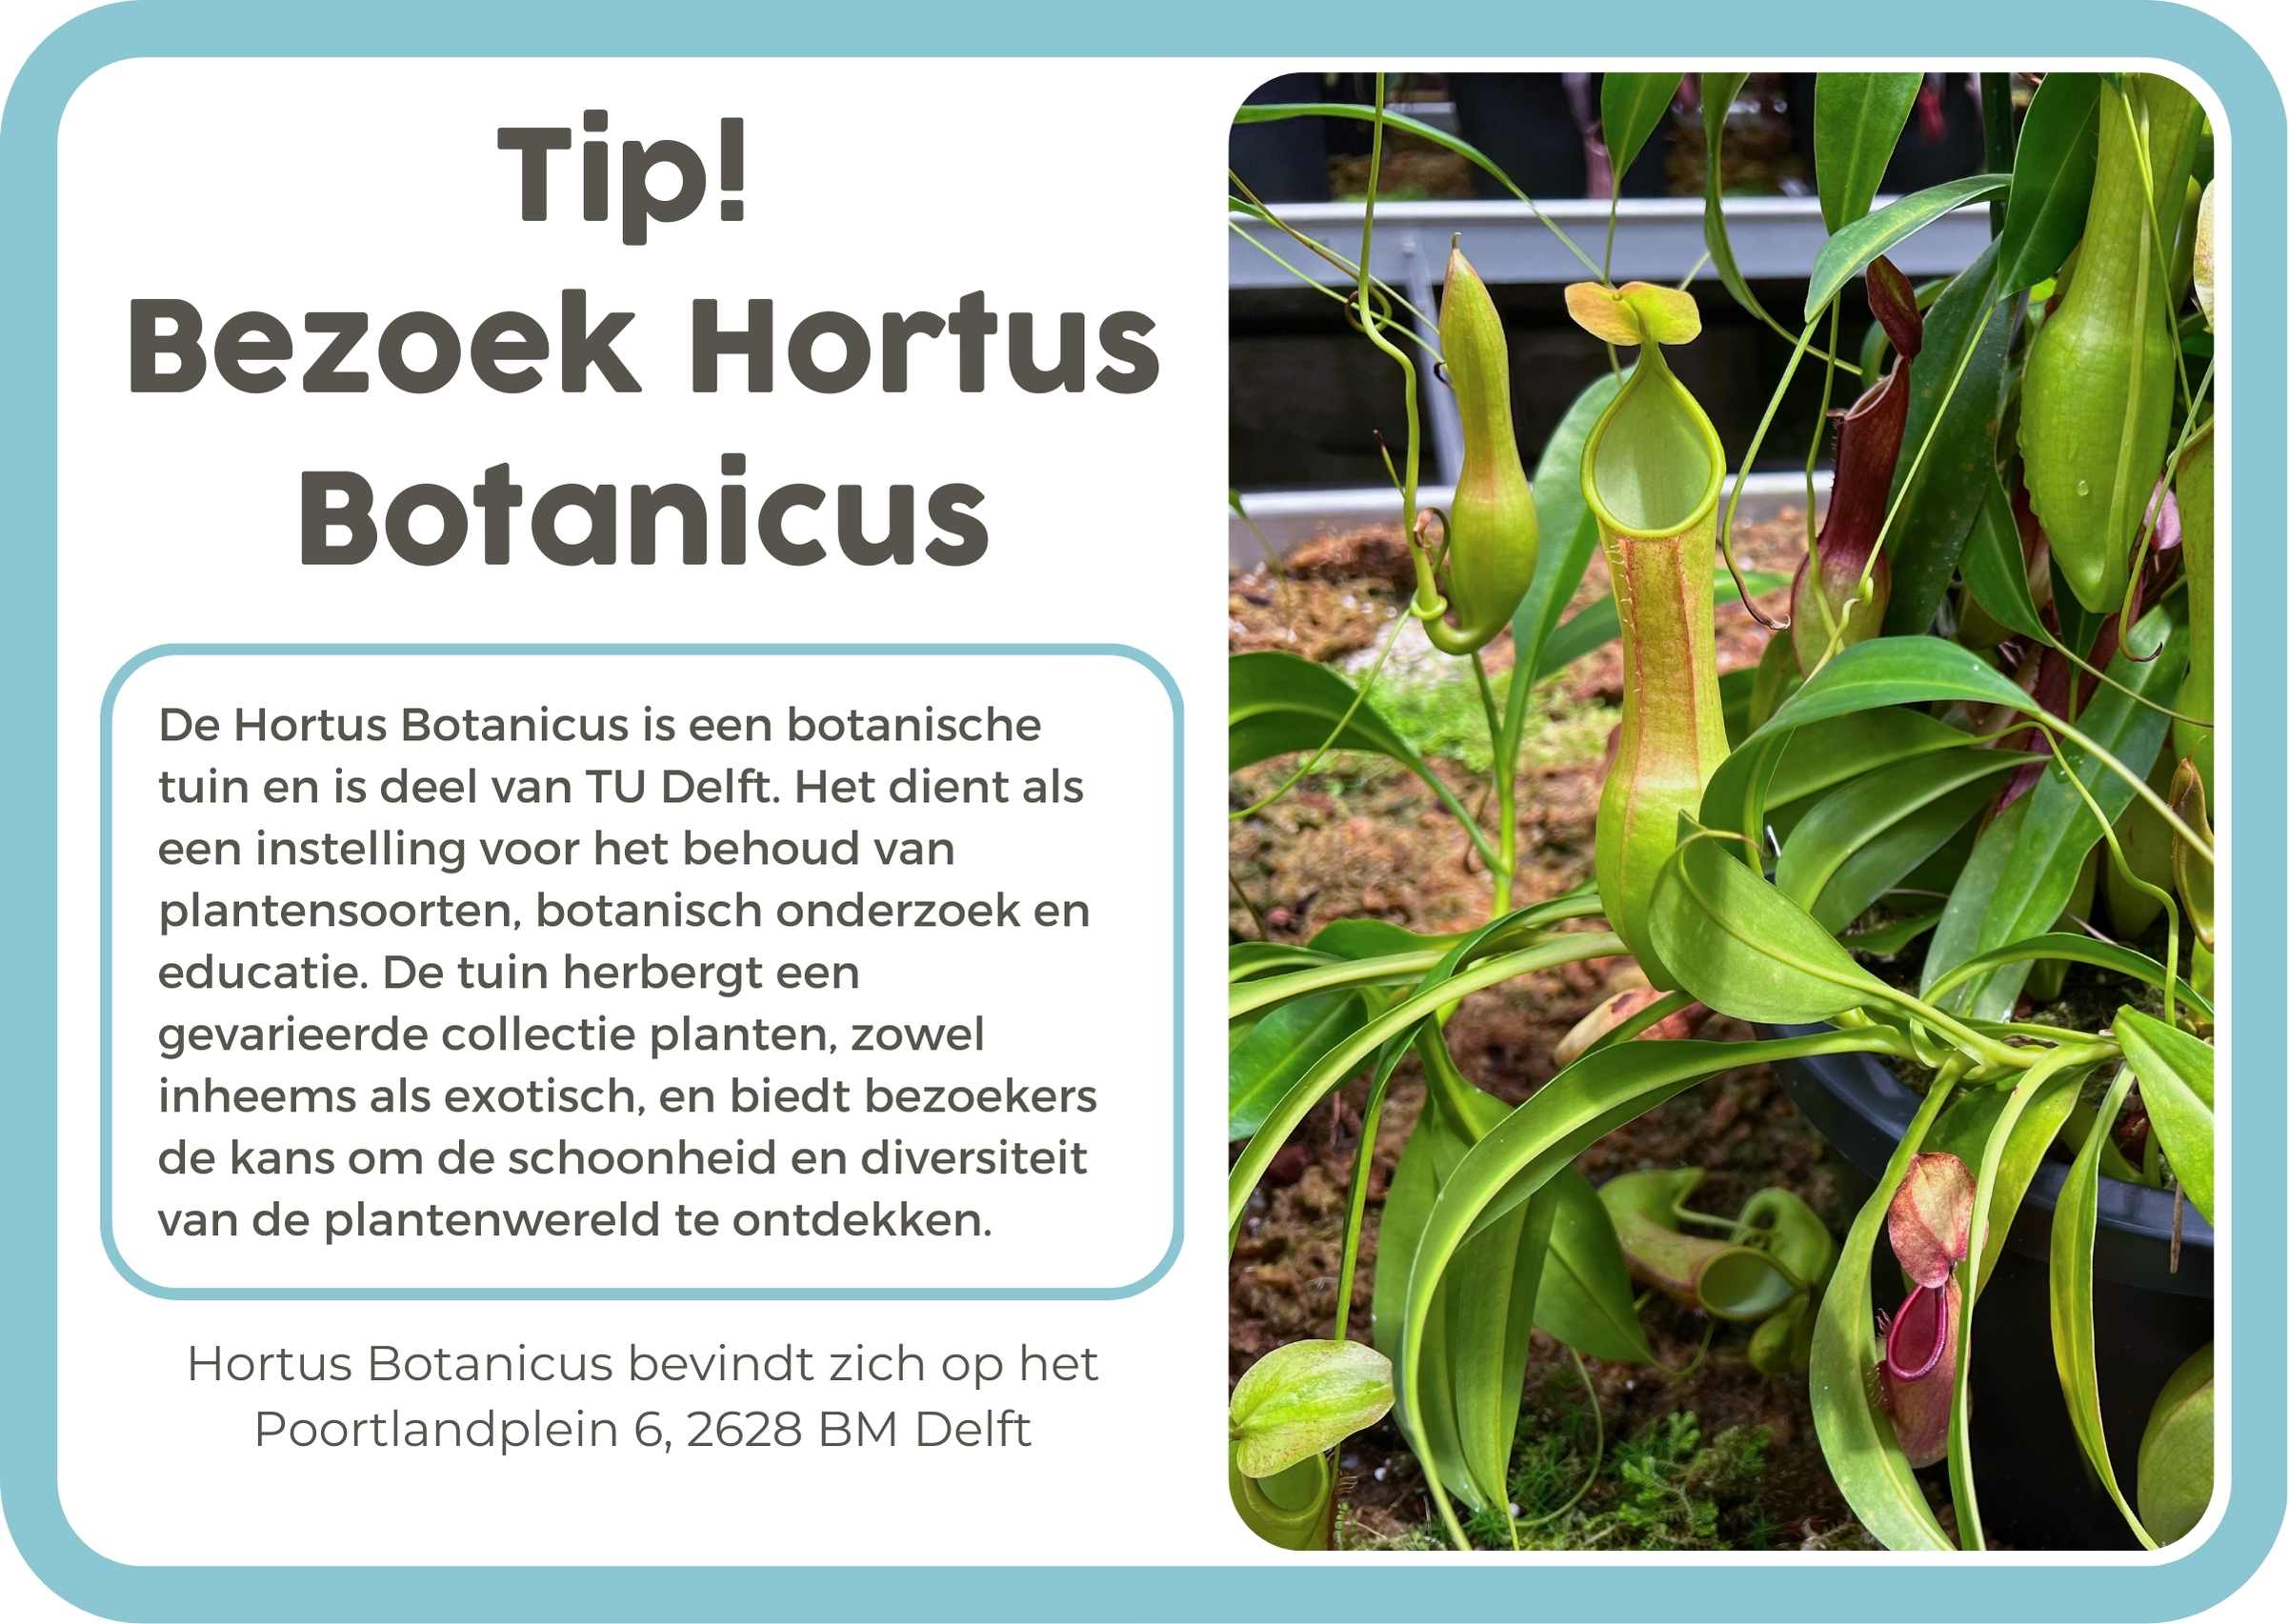 6. NL Hortus Botanicus